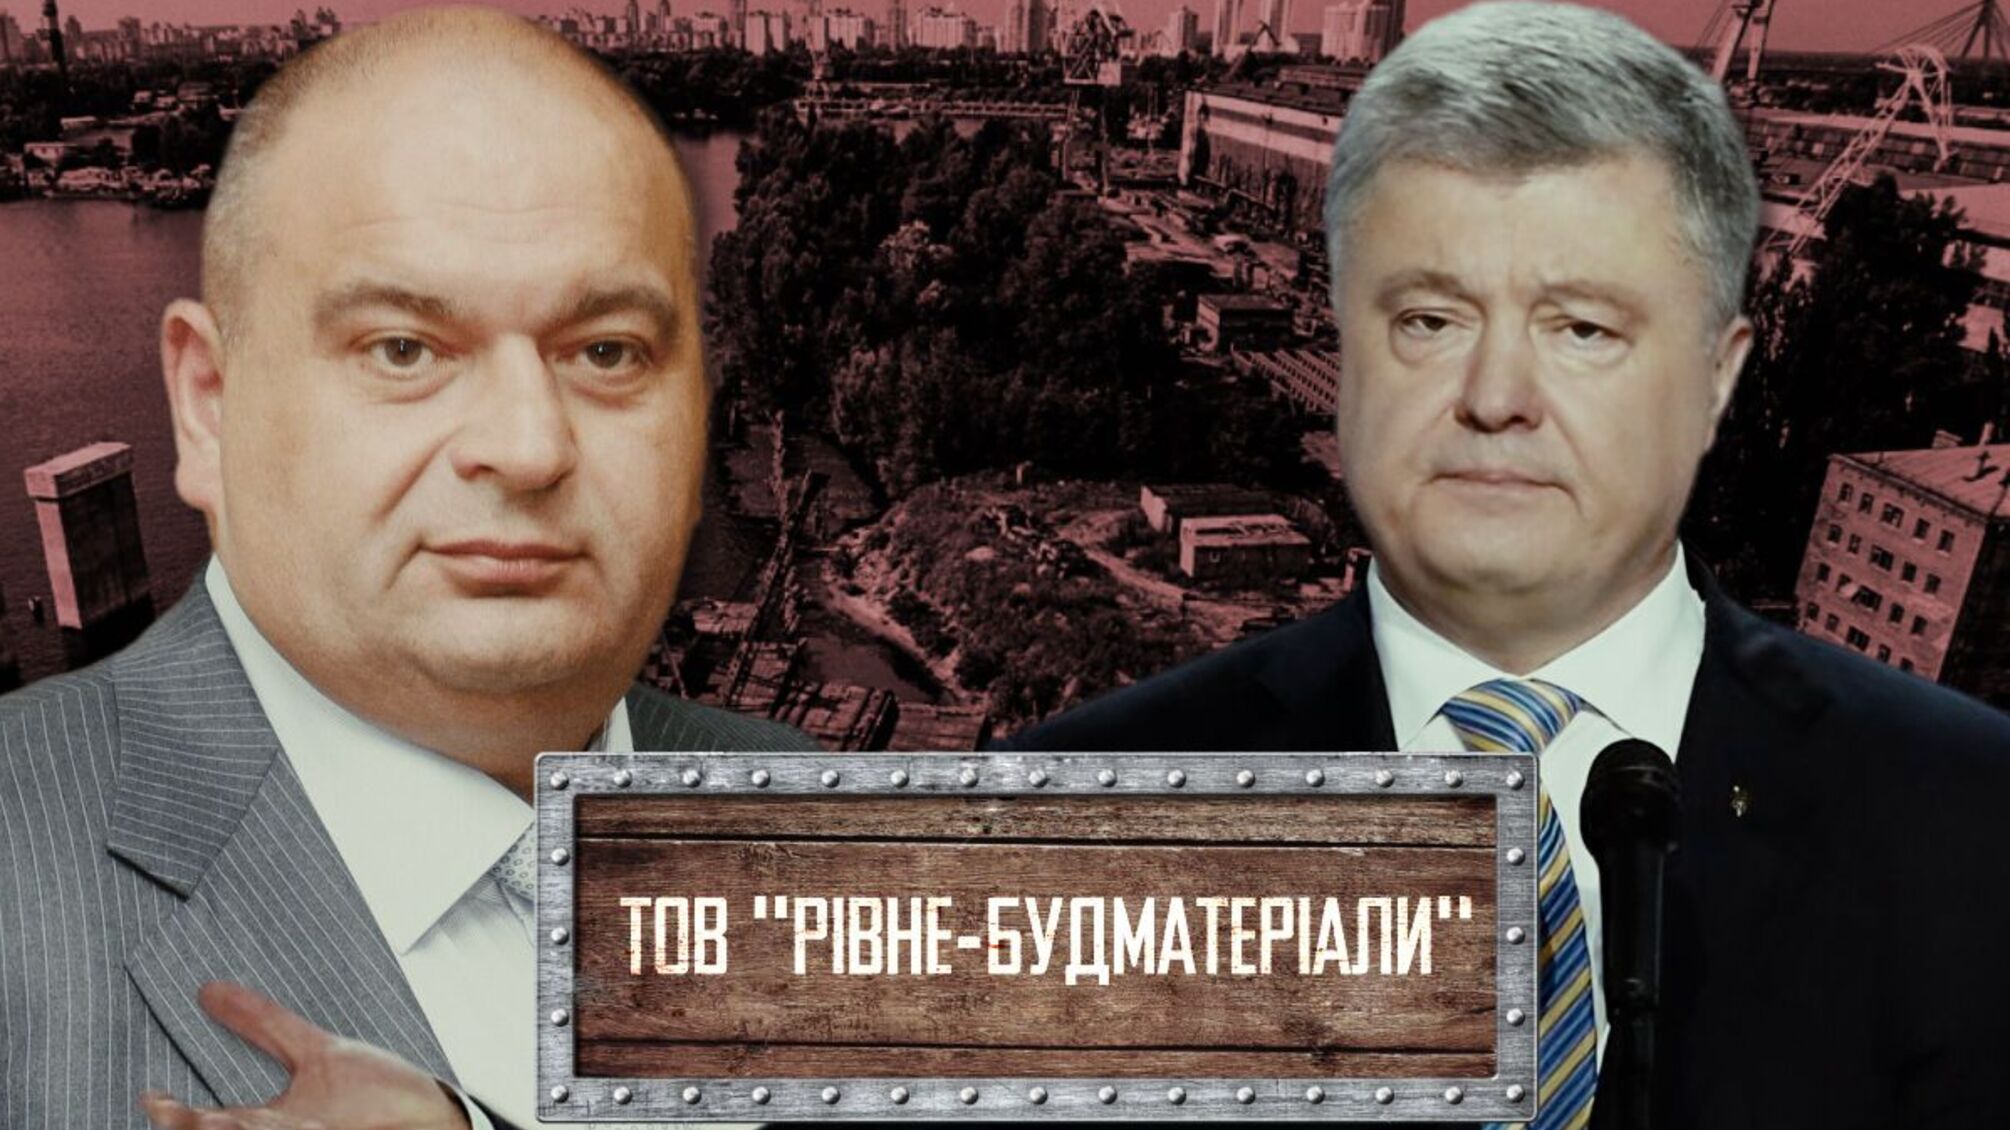 Ископаемые с 'криминальным шлейфом': люди экс-министра Злочевского складируют песок на заводе в Киеве?